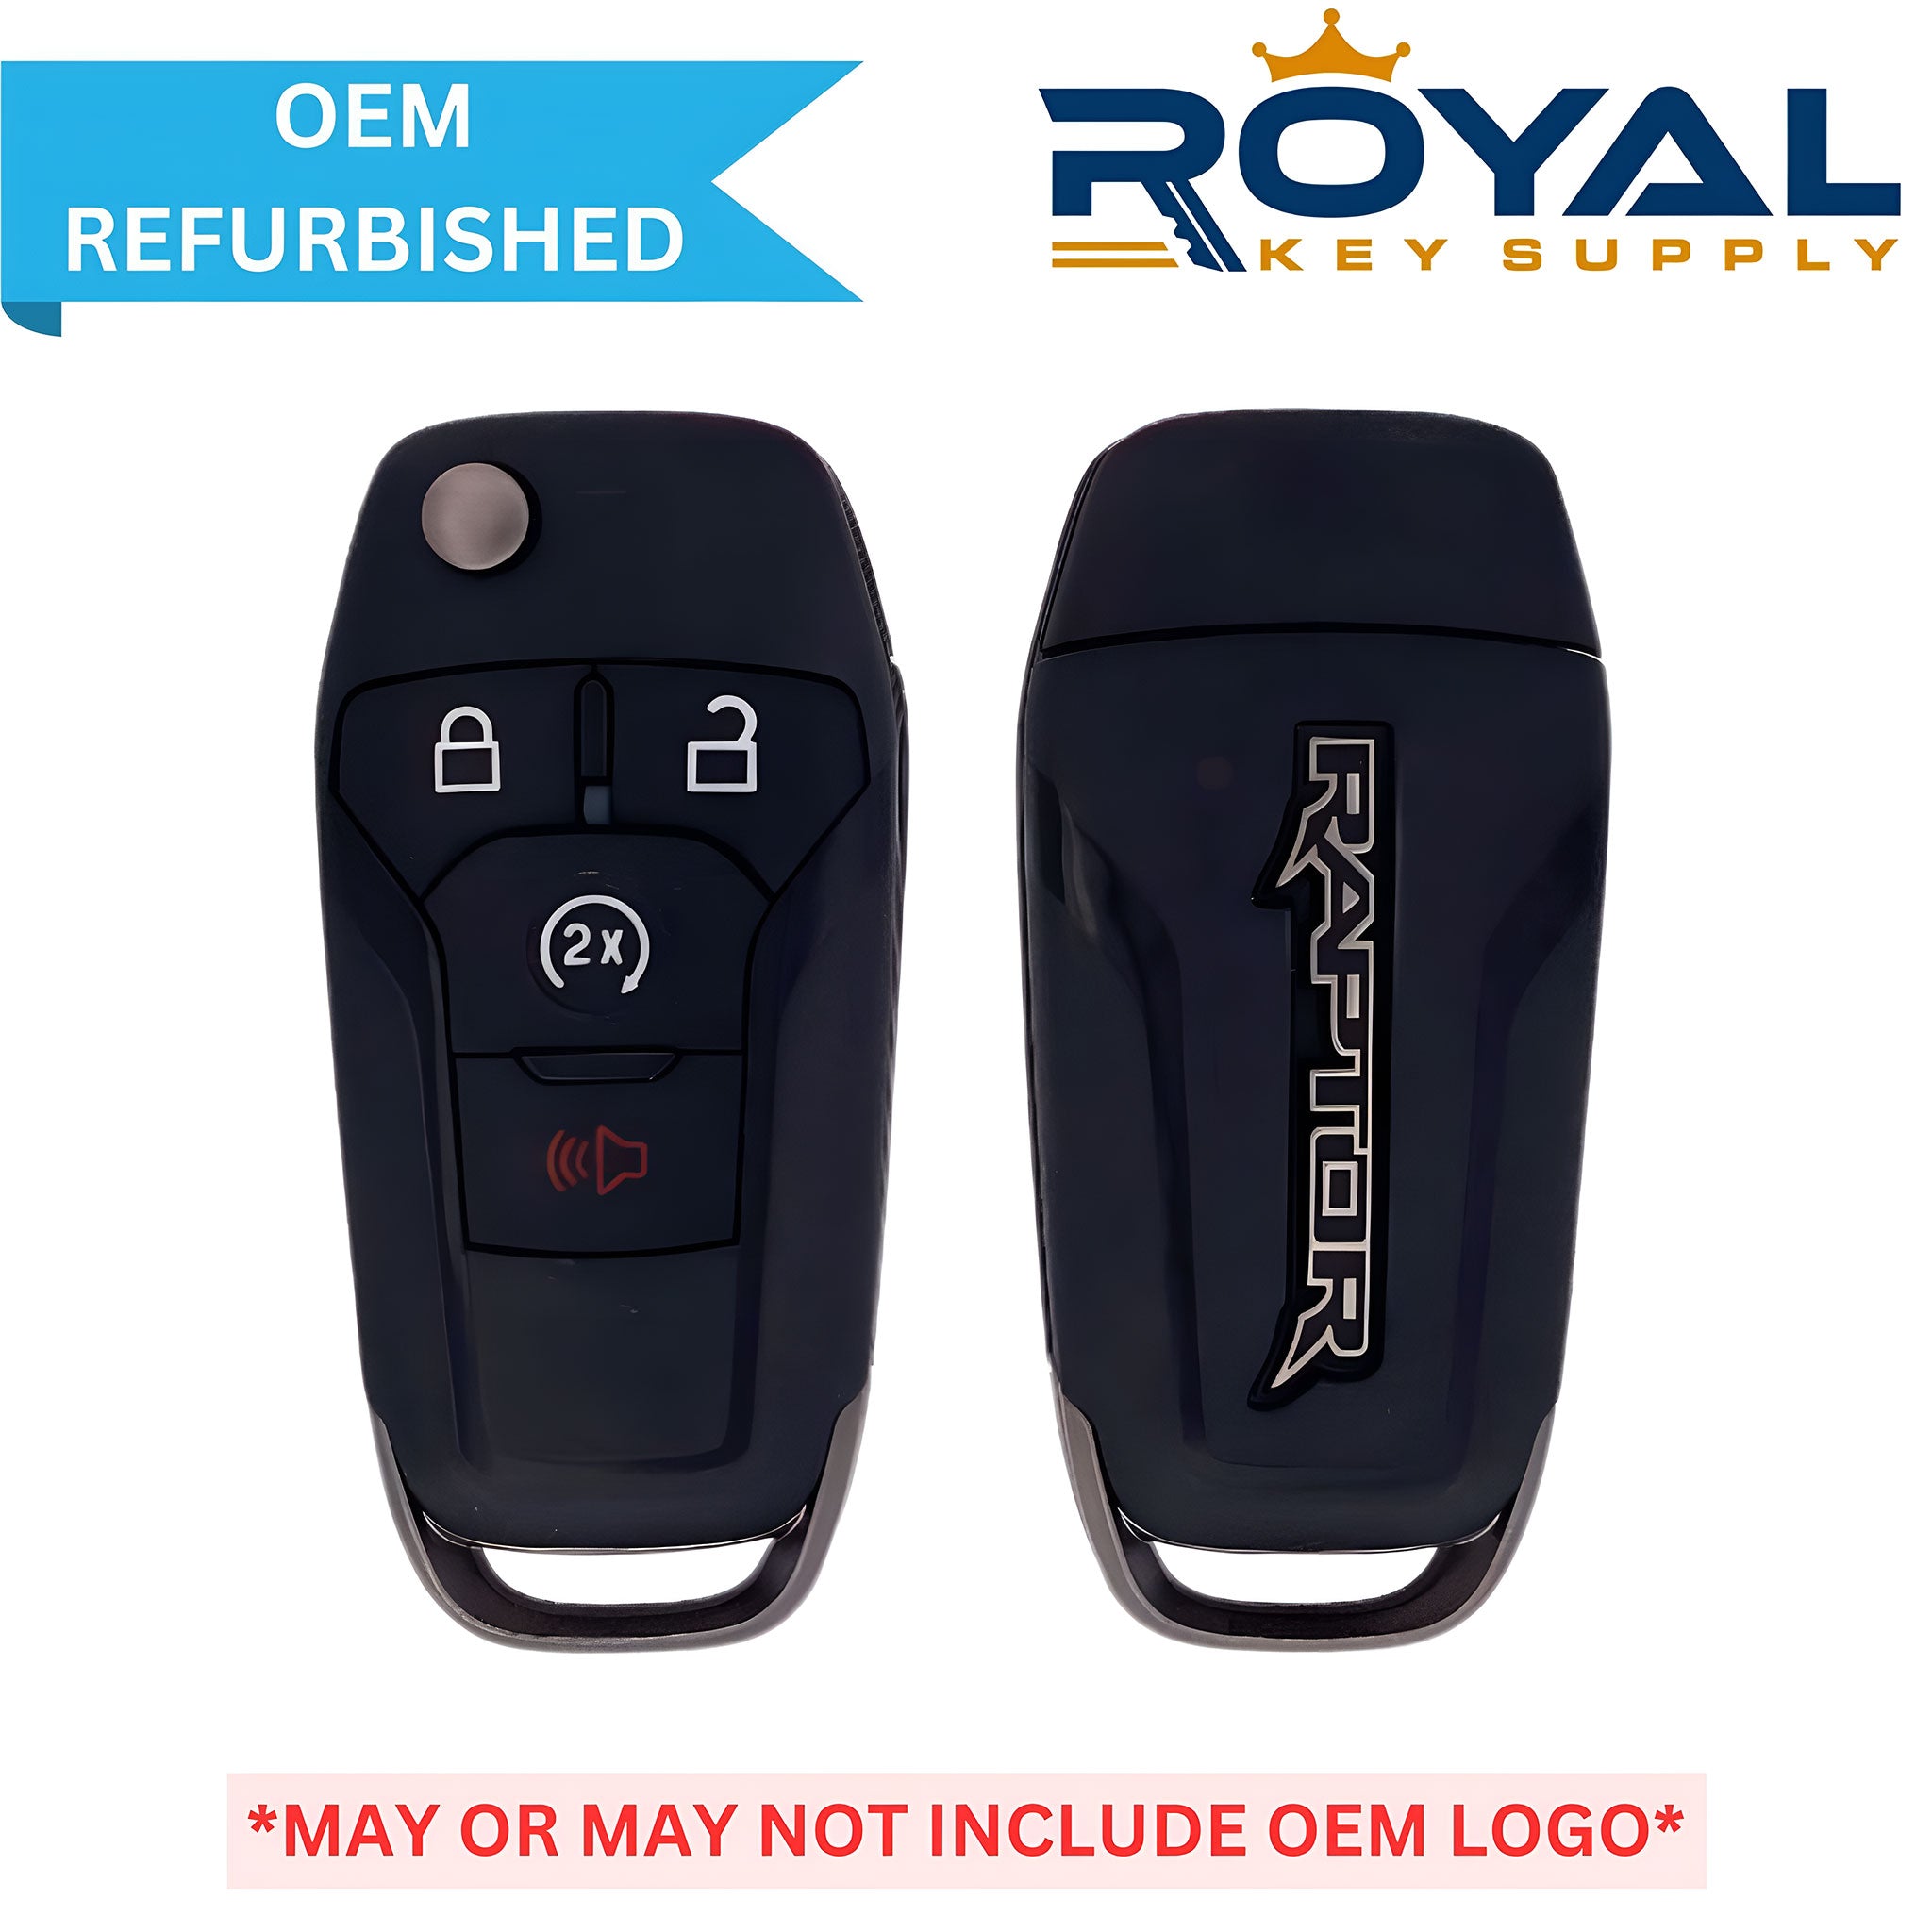 Ford Refurbished 2018-2020 F-150 (Raptor Logo) Remote Flip Key 4B Remote Start FCCID: N5F-A08TDA PN# 164-R8189, 5933454 - Royal Key Supply